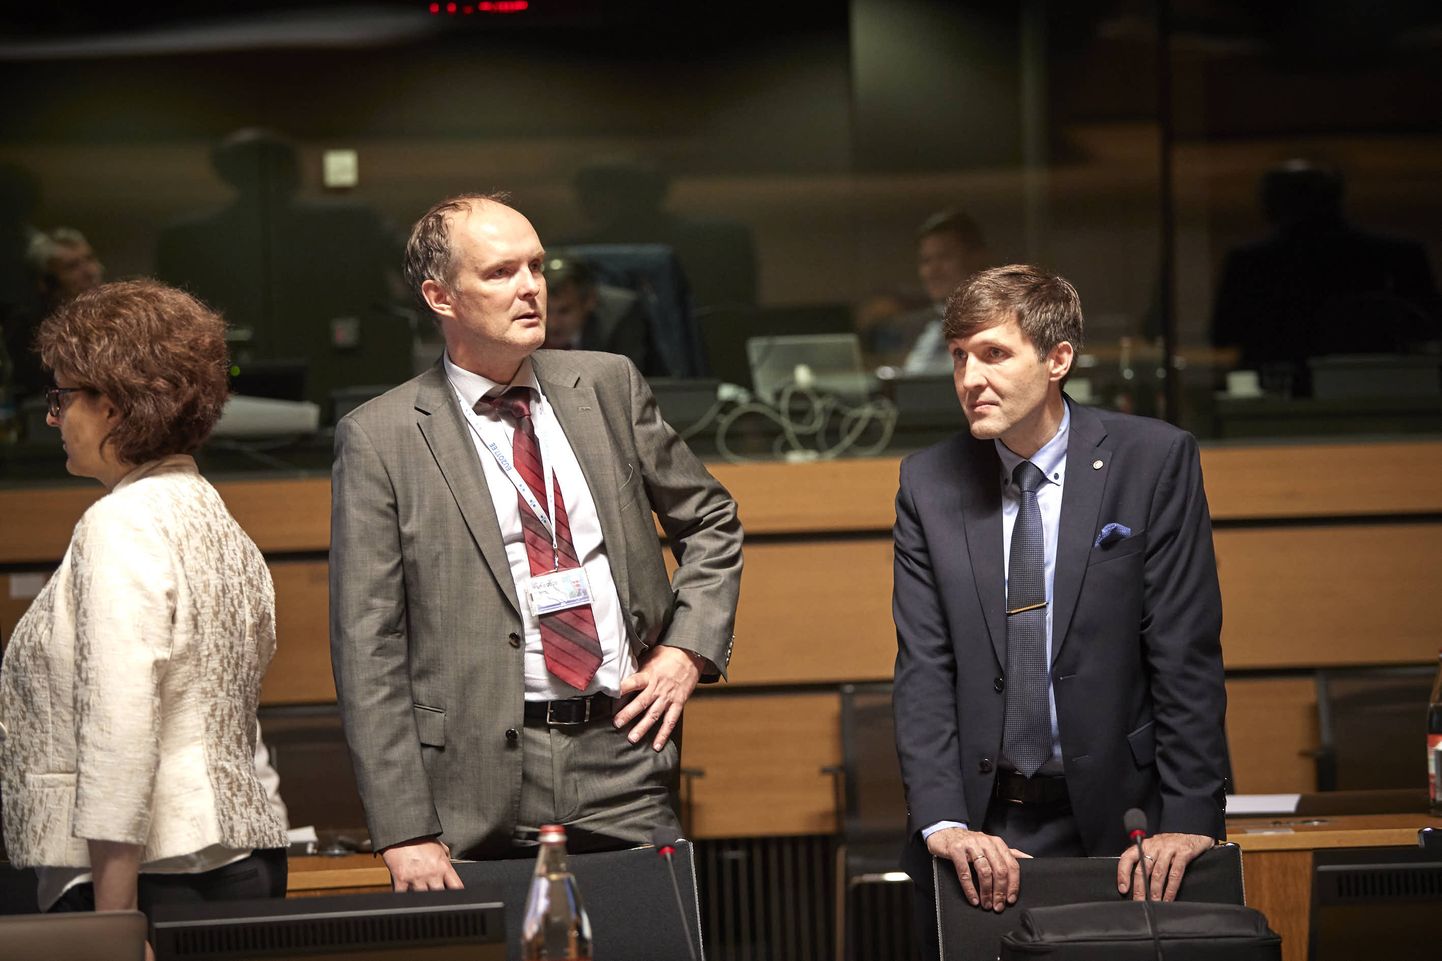 Eesti rahandusminister Martin Helme (paremal) ja ministeeriumi nõunik Priit Potisepp (vasakul) neljapäeval euroala rahandusministrite (Ecofin) kohtumisel.